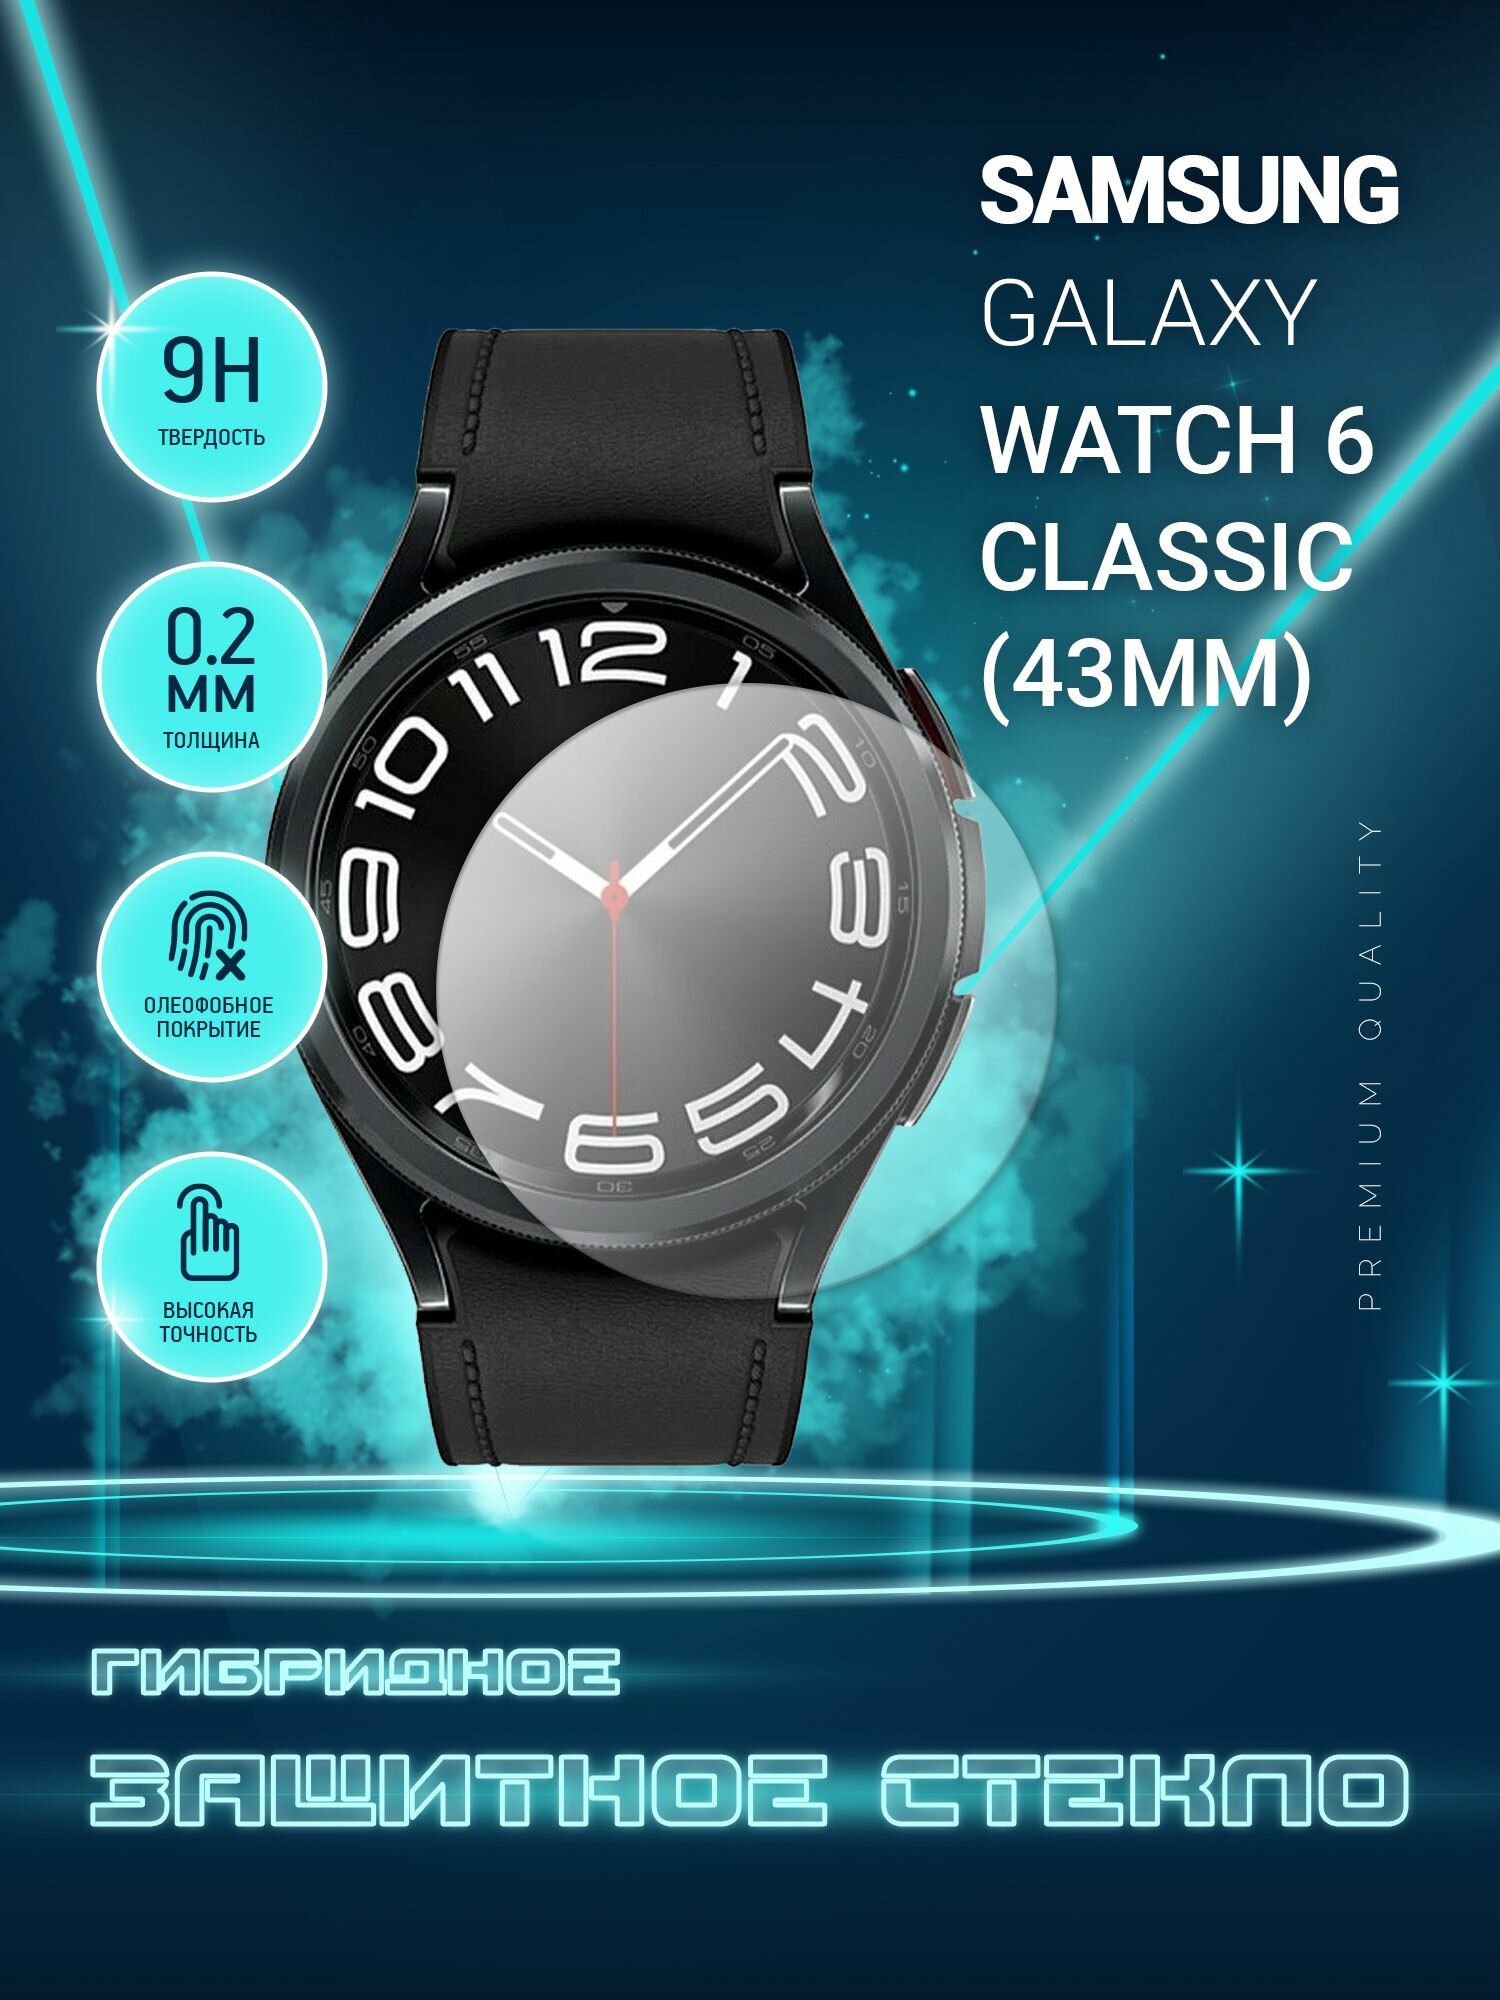 Защитное стекло на часы Samsung Galaxy Watch 6 Classic 43mm, Самсунг Галакси Вотч 6 классик 43мм, гибридное (пленка + стекловолокно), Crystal boost